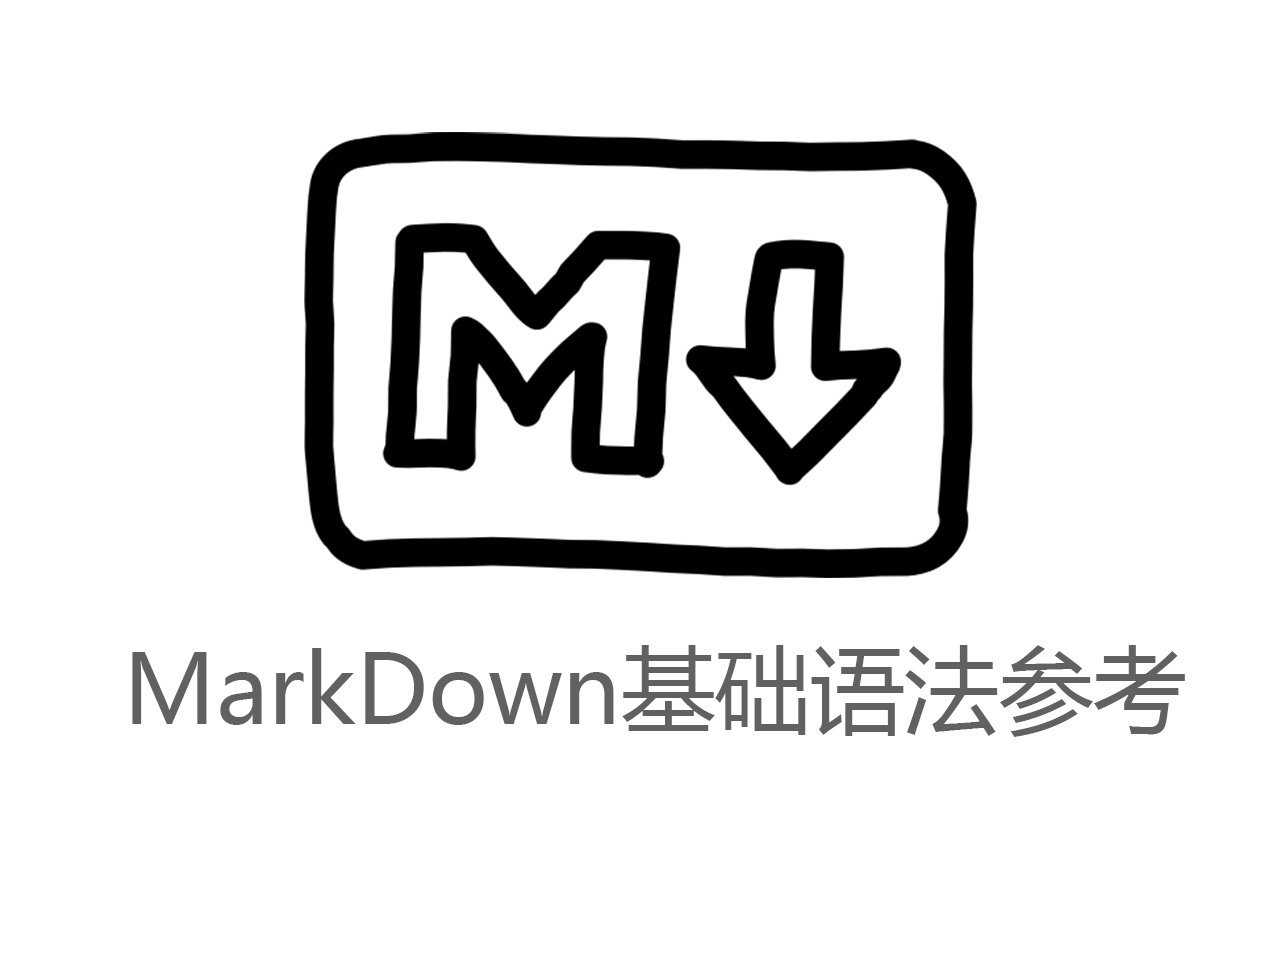 markdown newline